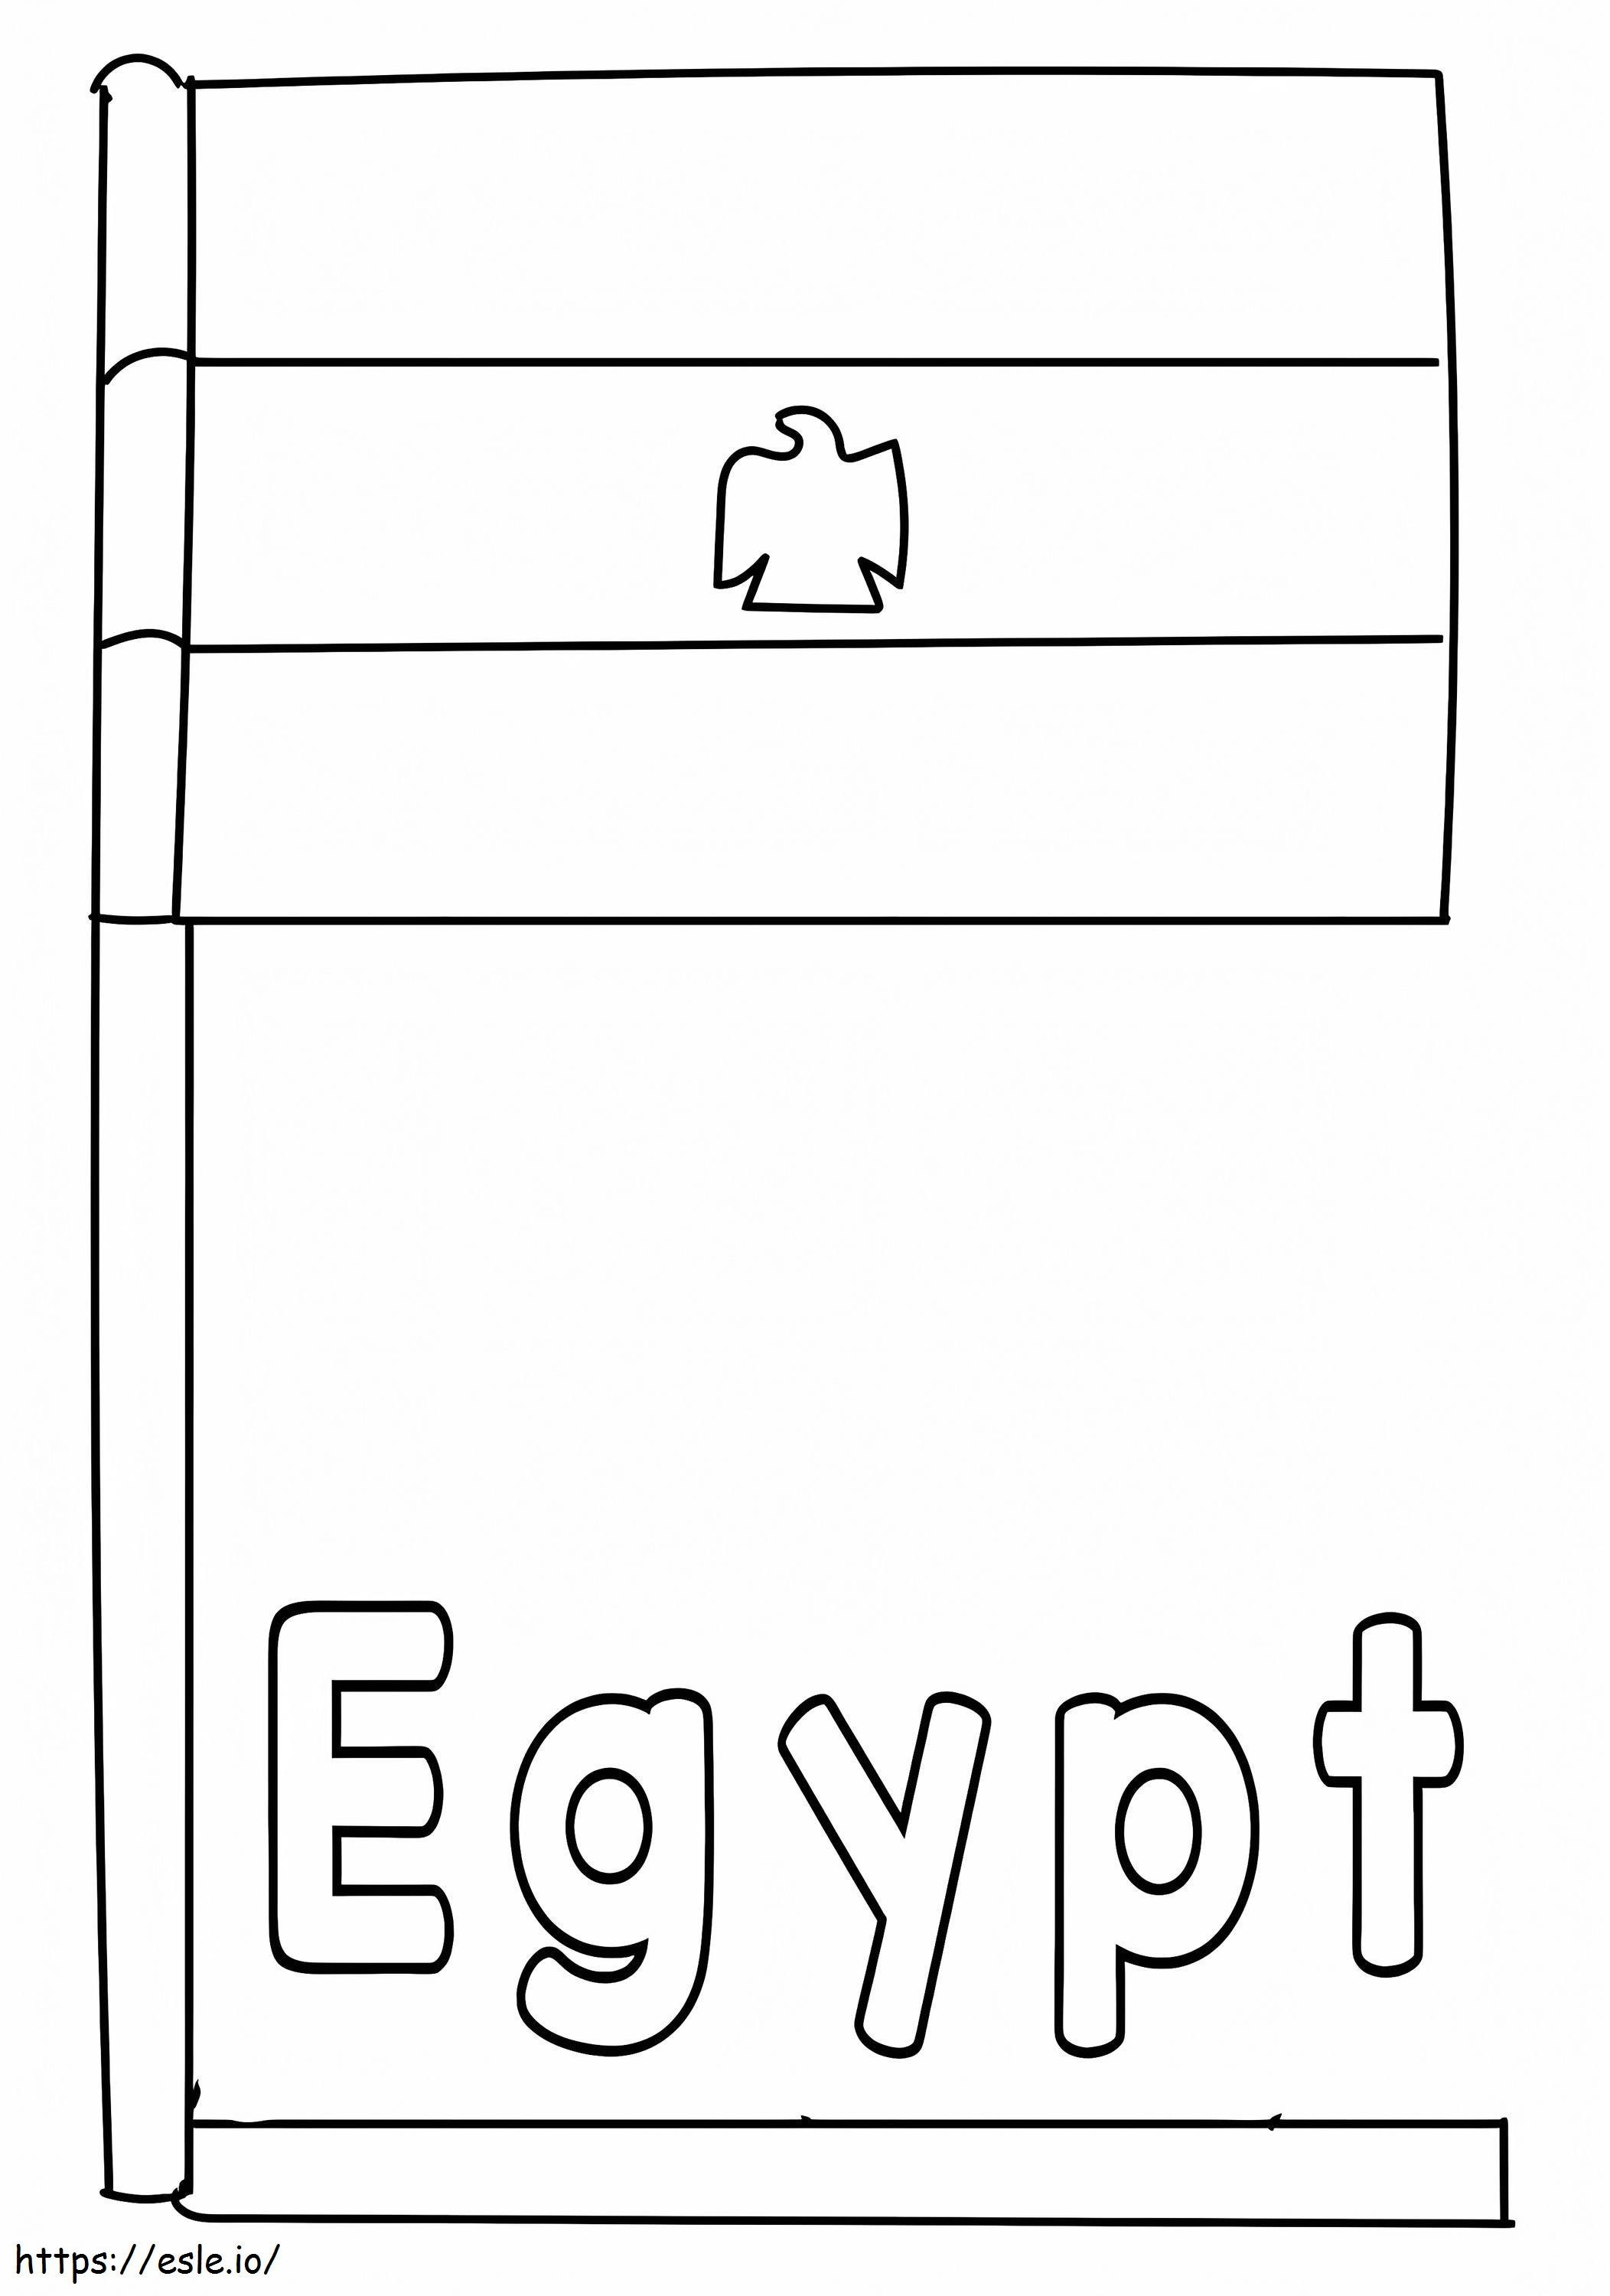 Coloriage Drapeau Egypte 1 à imprimer dessin